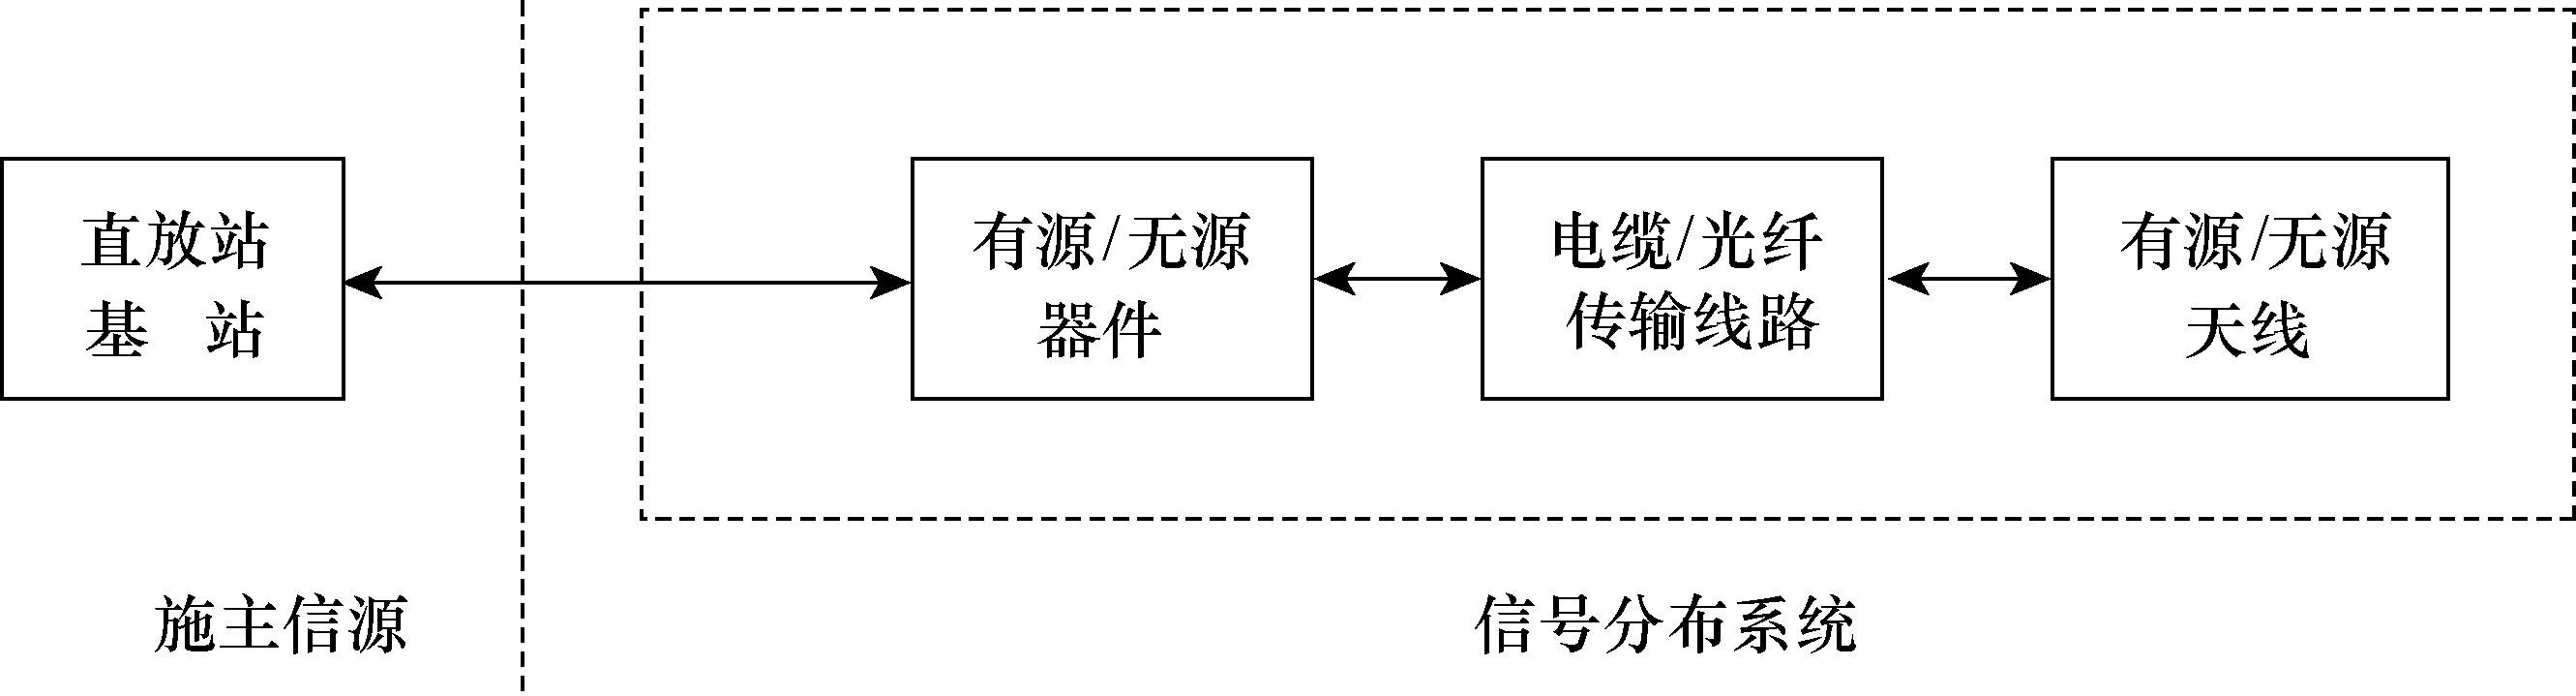 圖10-27  系統結構